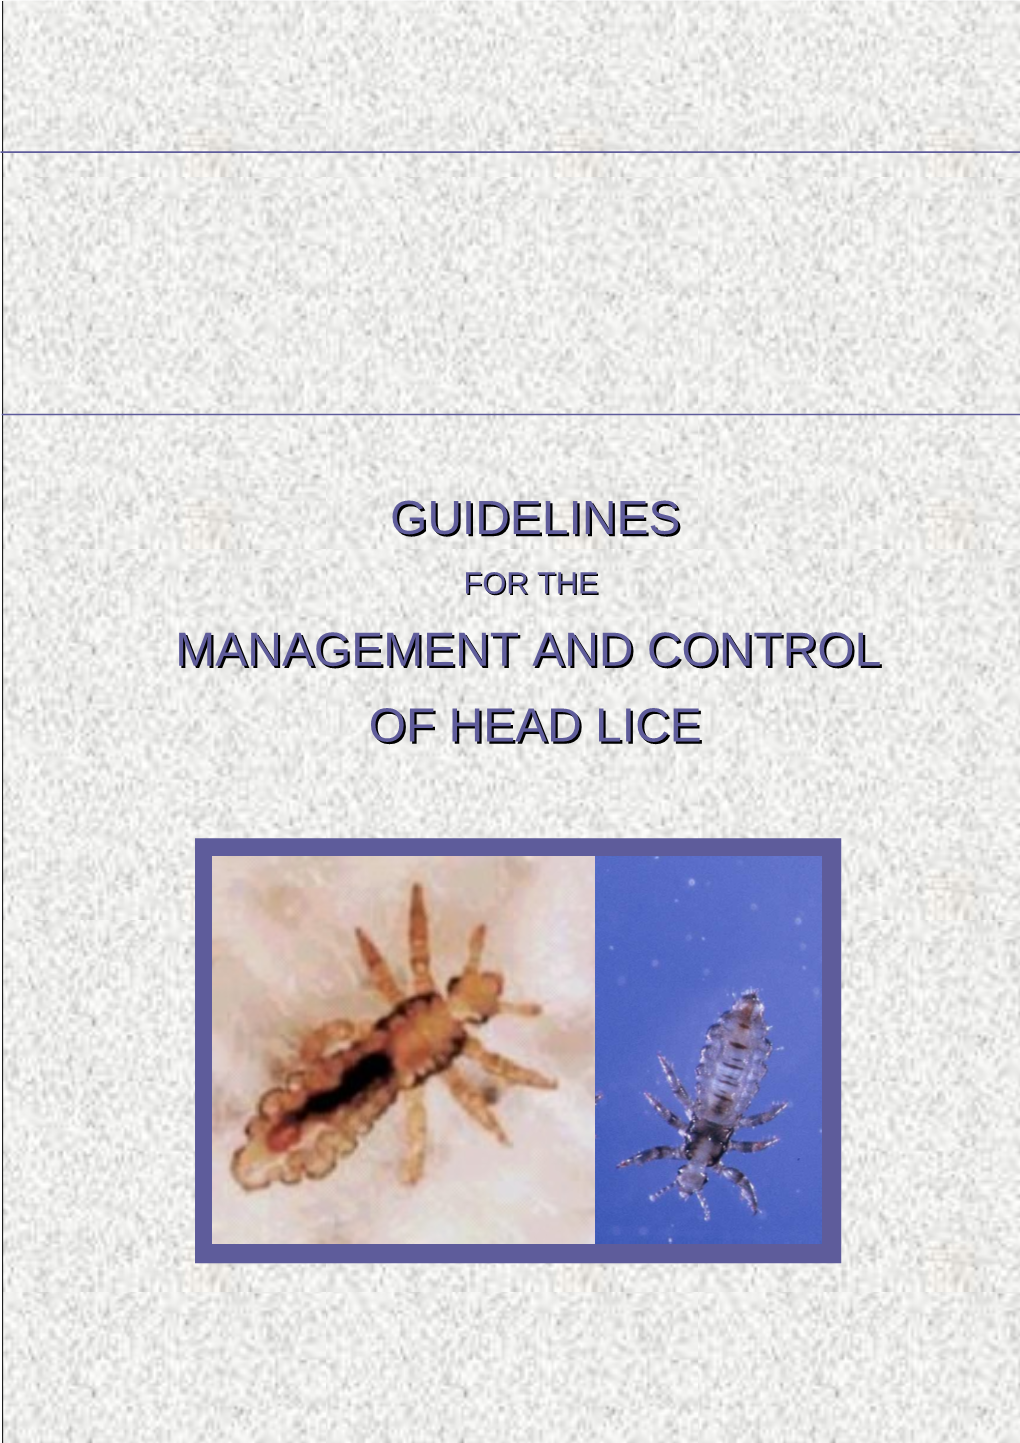 Management of Head Lice in Schools